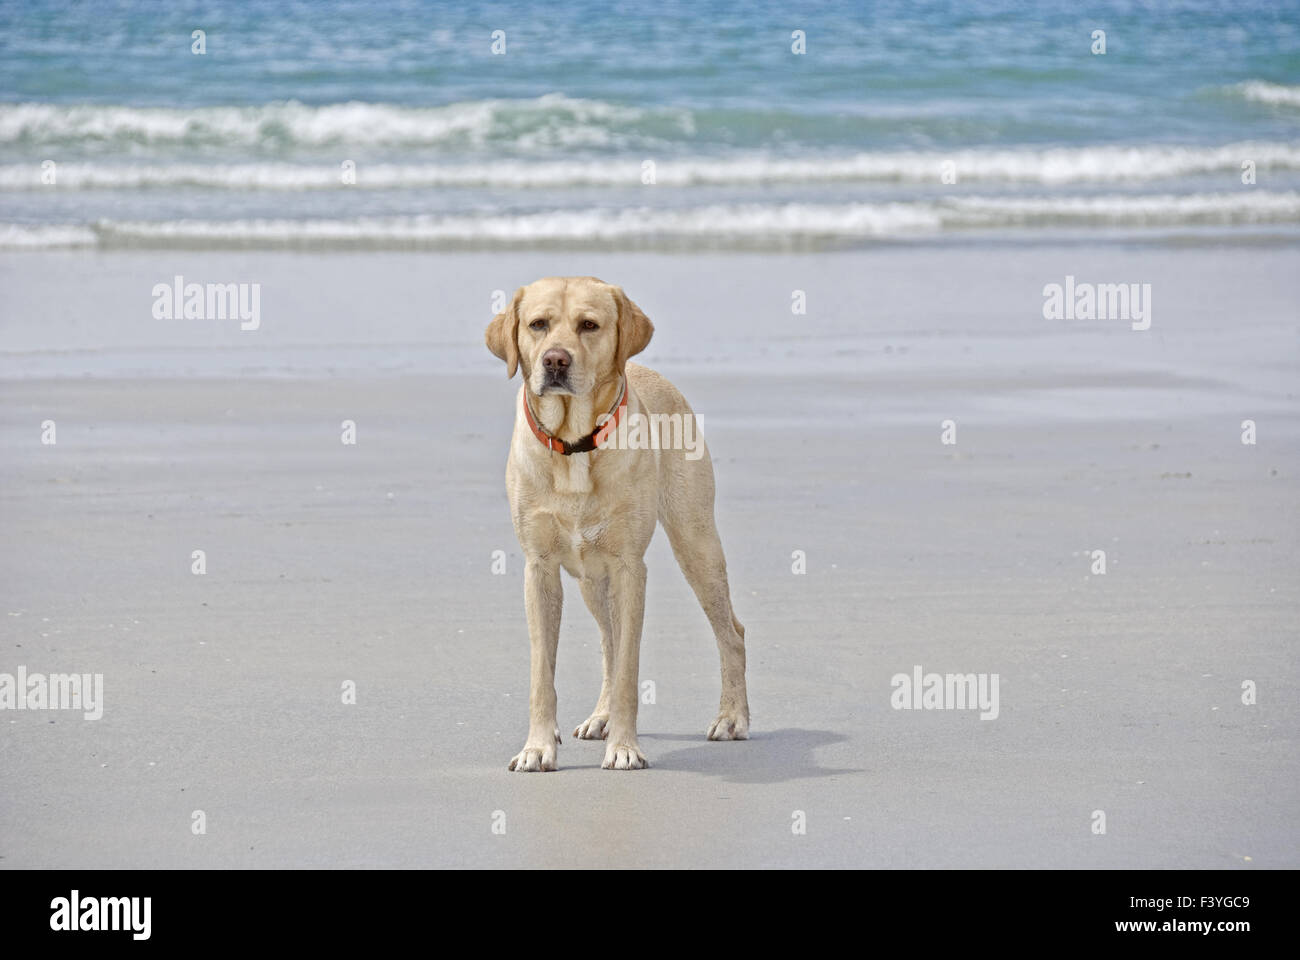 Labrador on the beach Stock Photo